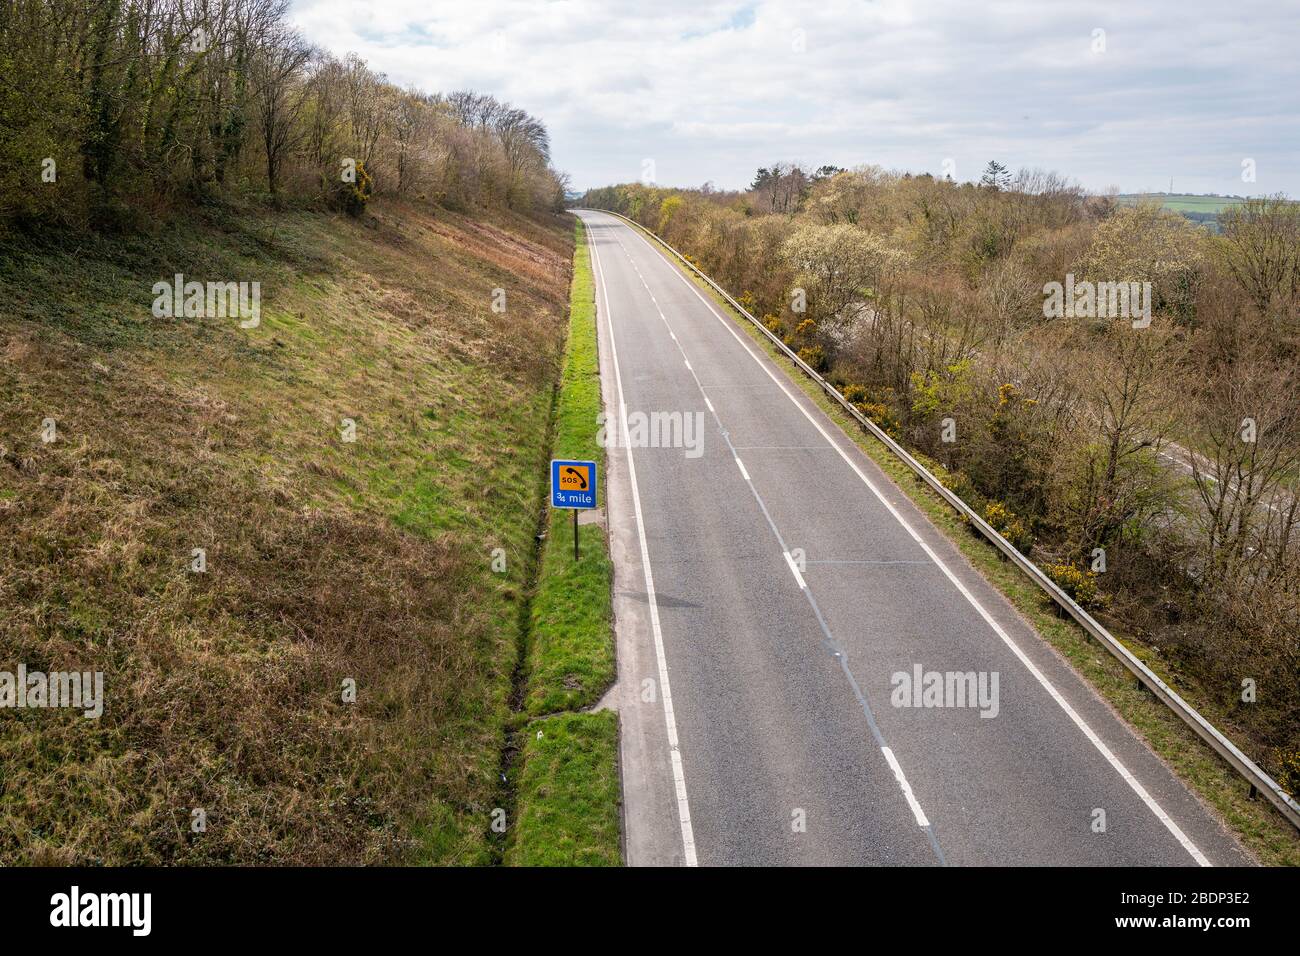 La route principale vide de l'A30 ne montre aucun trafic de vacances de printemps pour Cornwall dans le sud-ouest de l'Angleterre pendant les restrictions de voyage de COVID-19, avril 2020. Banque D'Images